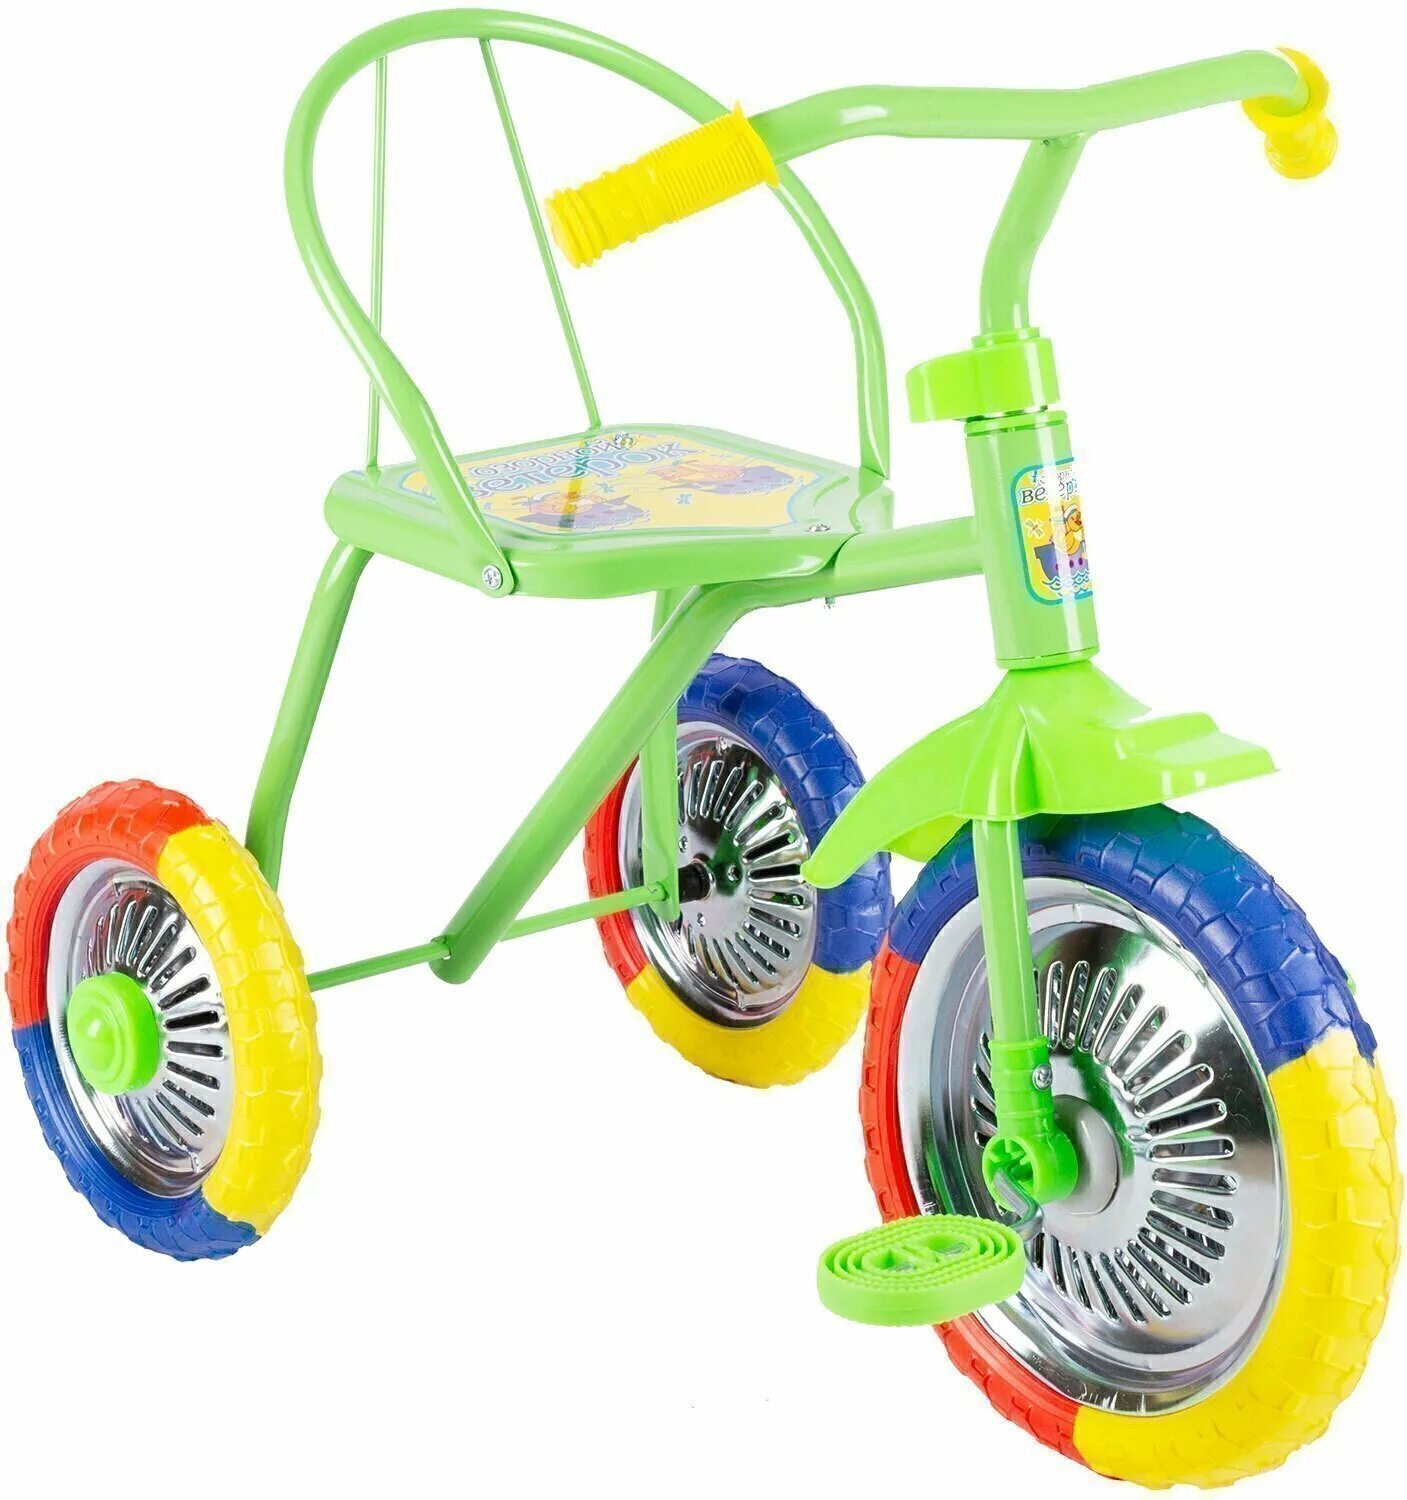 Трехколесные велосипеды ростов. Велосипед трёхколёсный детский lh702. Велосипед трехколесный озорной ветерок GV-b3-2mx зеленый. Трехколесный велосипед озорной ветерок 10" GV-b3-2mx, желтый. Детский трехколесный велосипед озорной ветерок GV-b3-2mx цвета микс.